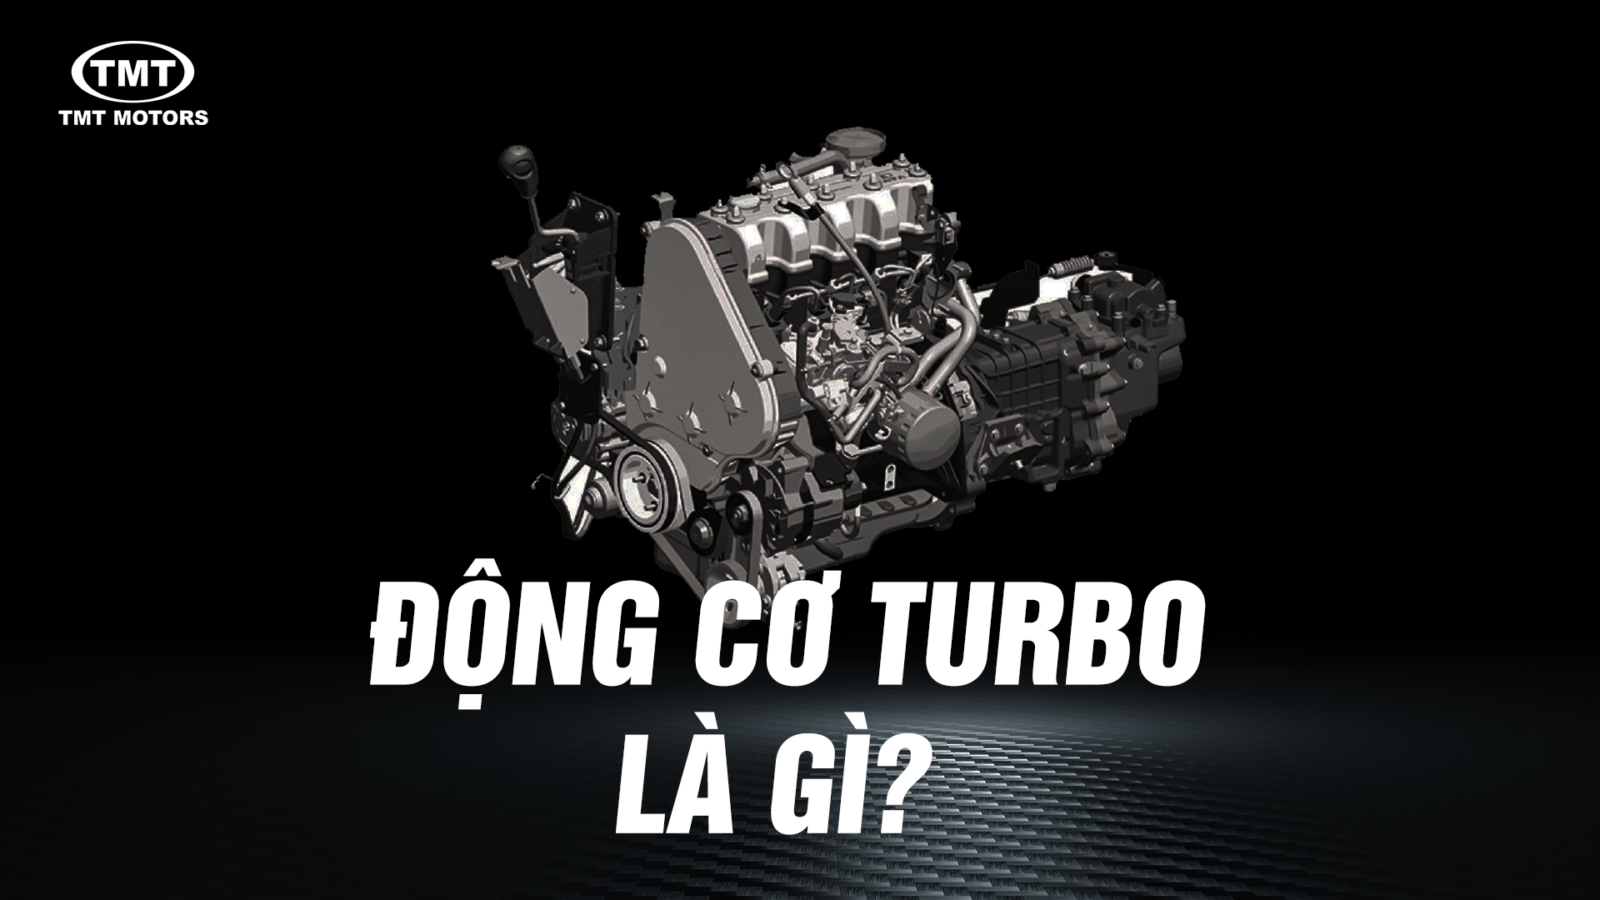 Động cơ Turbo là gì?